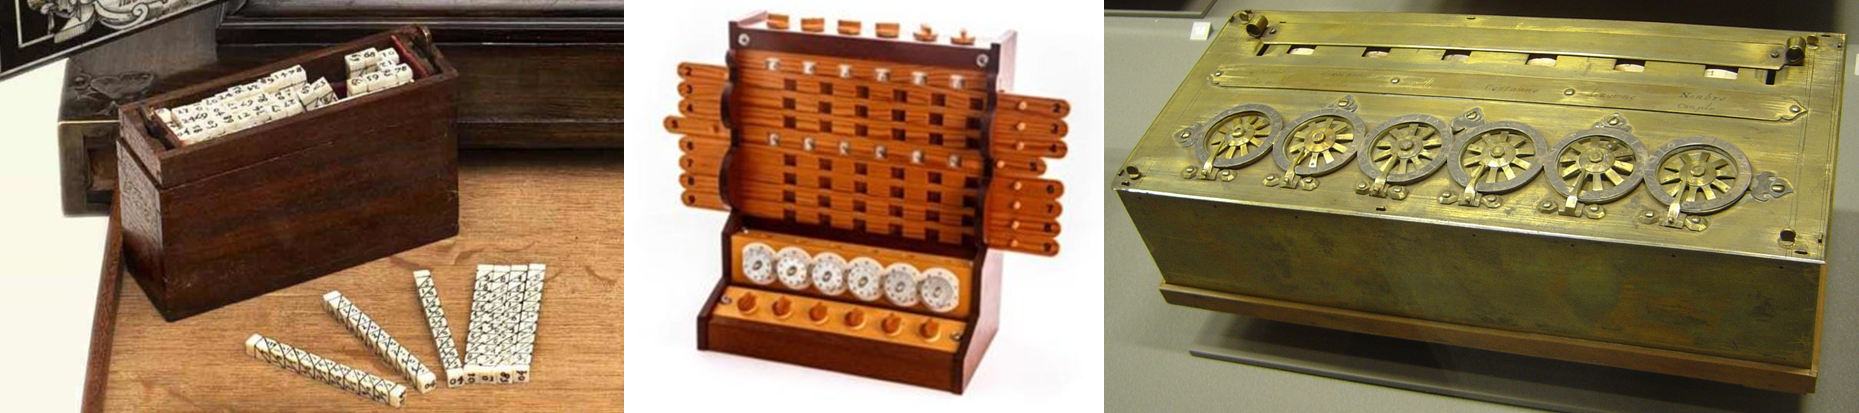 De izquierda a derecha: los huesos de Napier (Museo Arqueológico Nacional de España), el reloj calculador de Schickard (Museo de la Ciencia de la Universidad Pública de Navarra) y una pascalina del año 1952